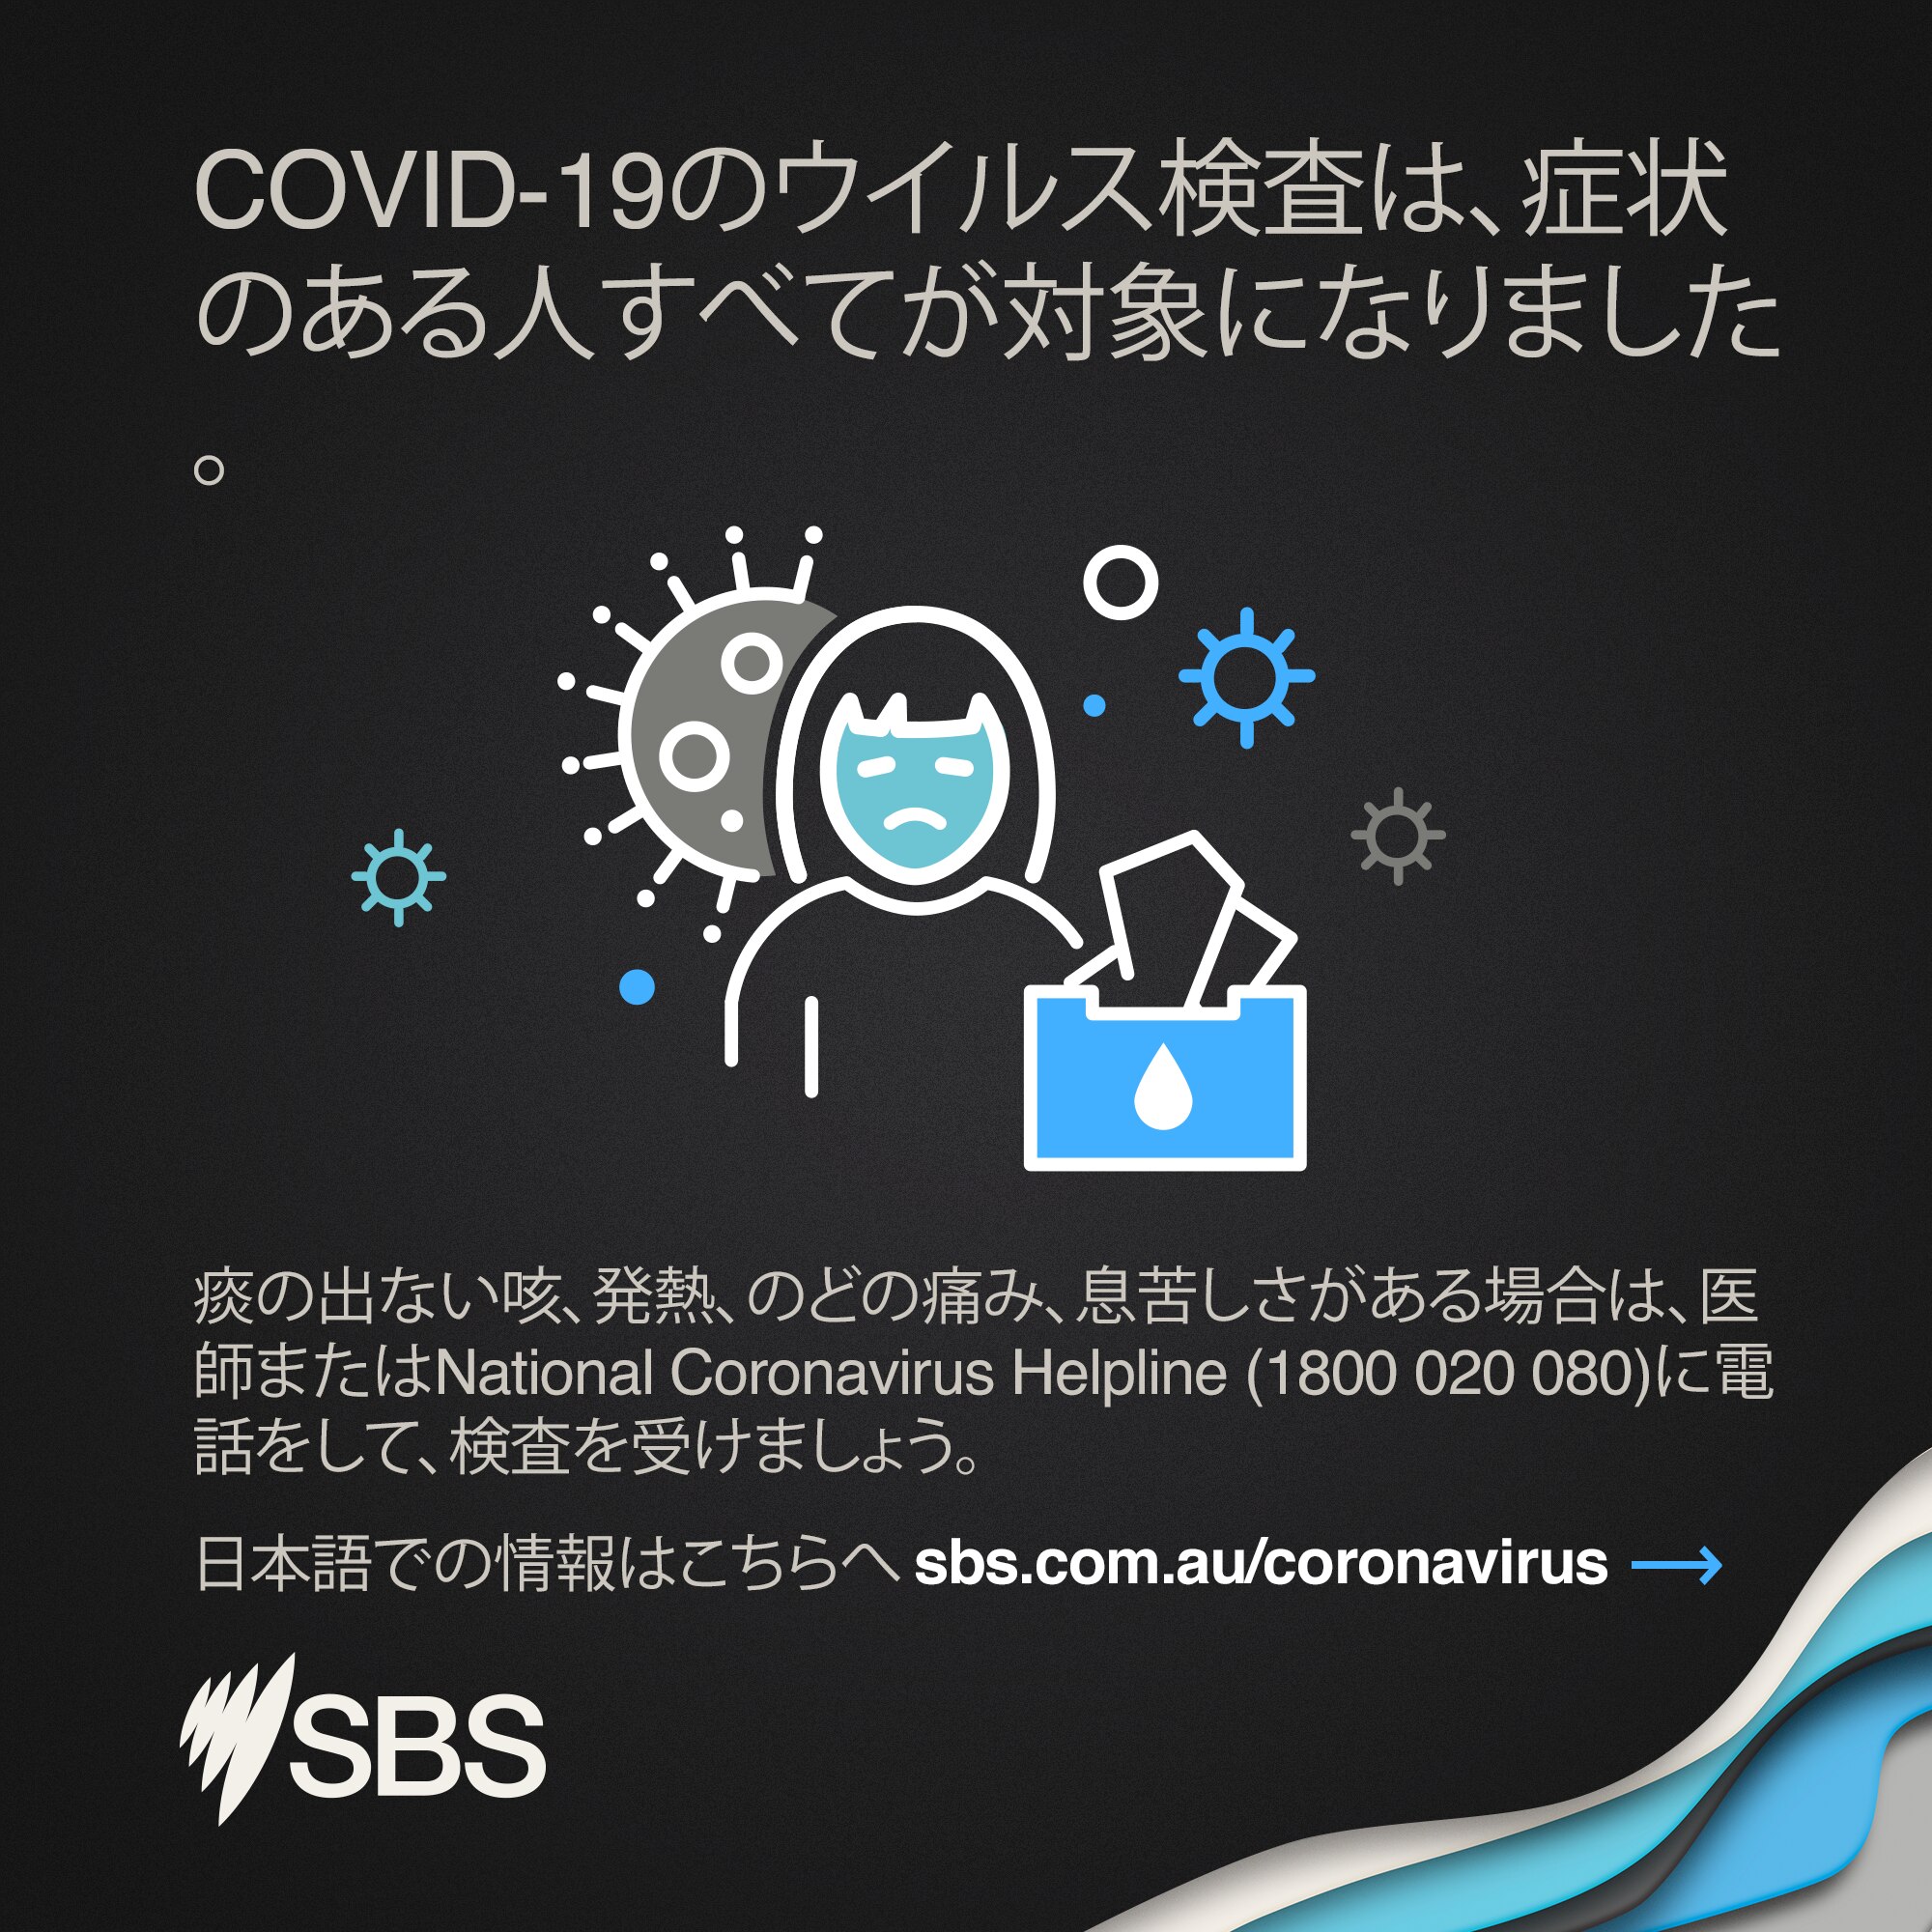 Coronavirus Testing Japanese